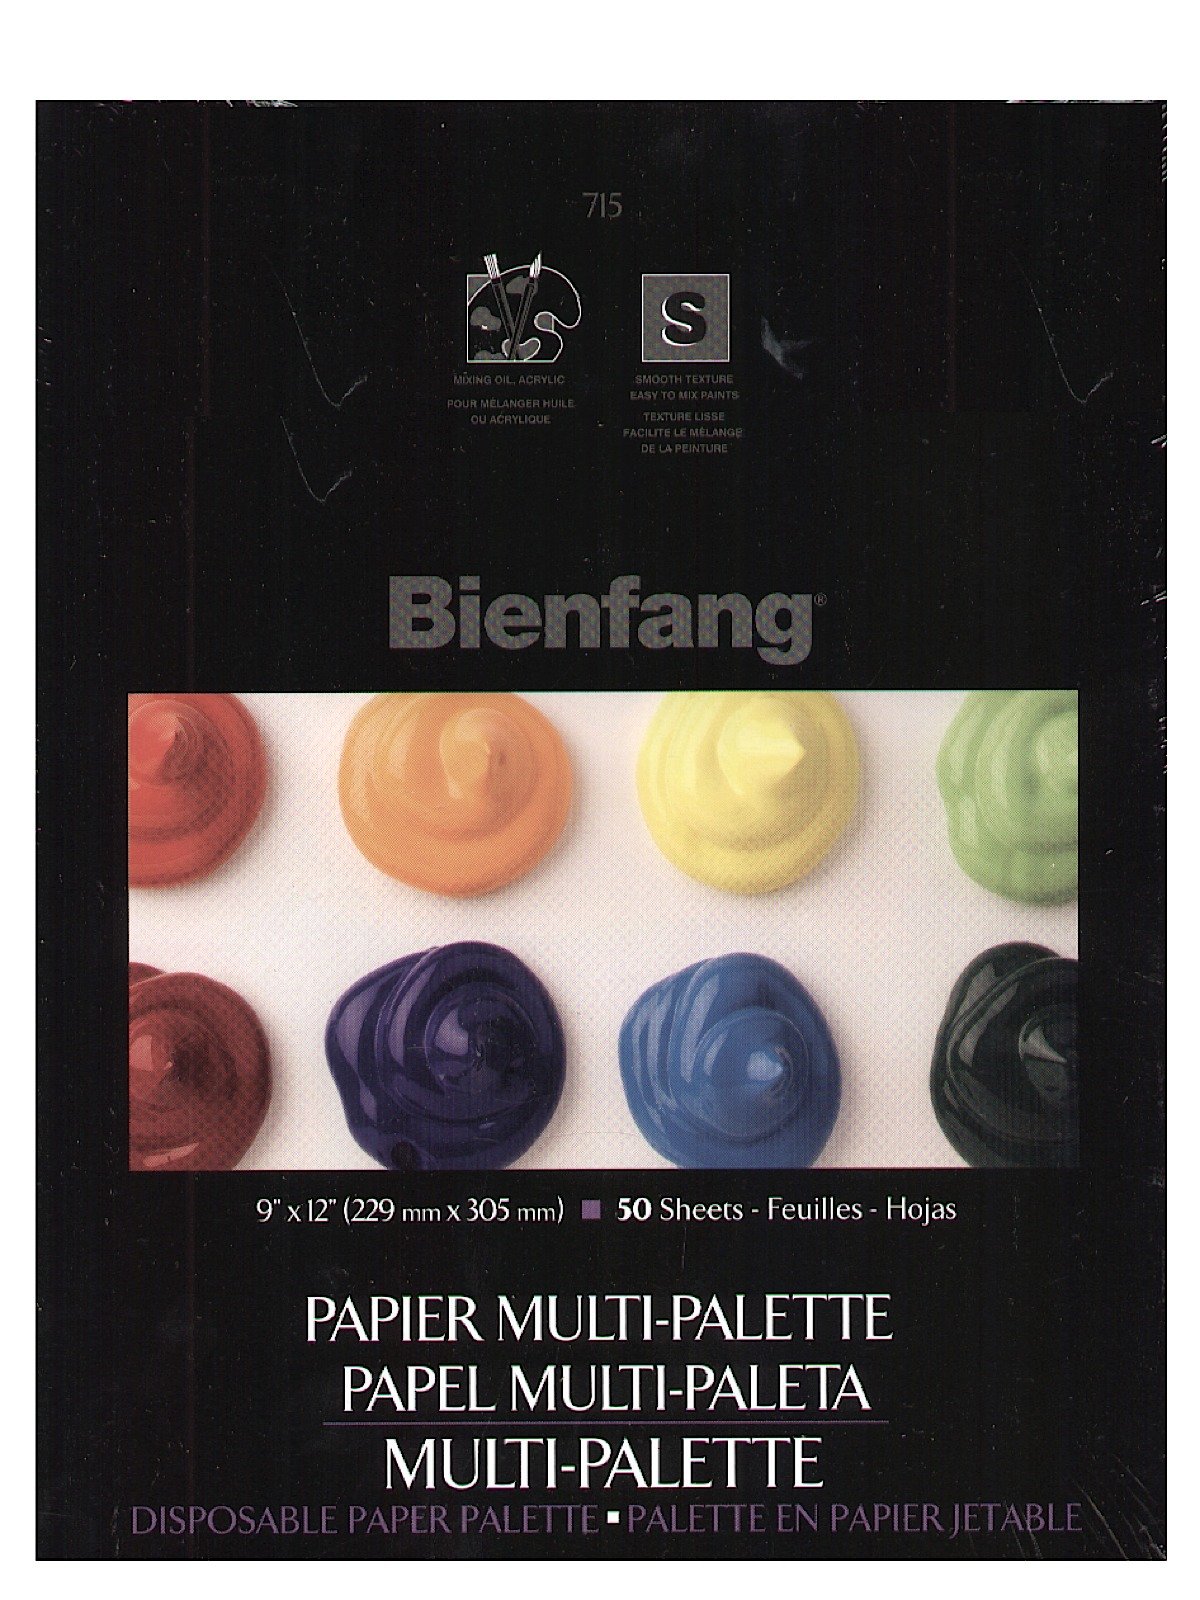 Bienfang - Multi-Palette Disposable Paper Palette